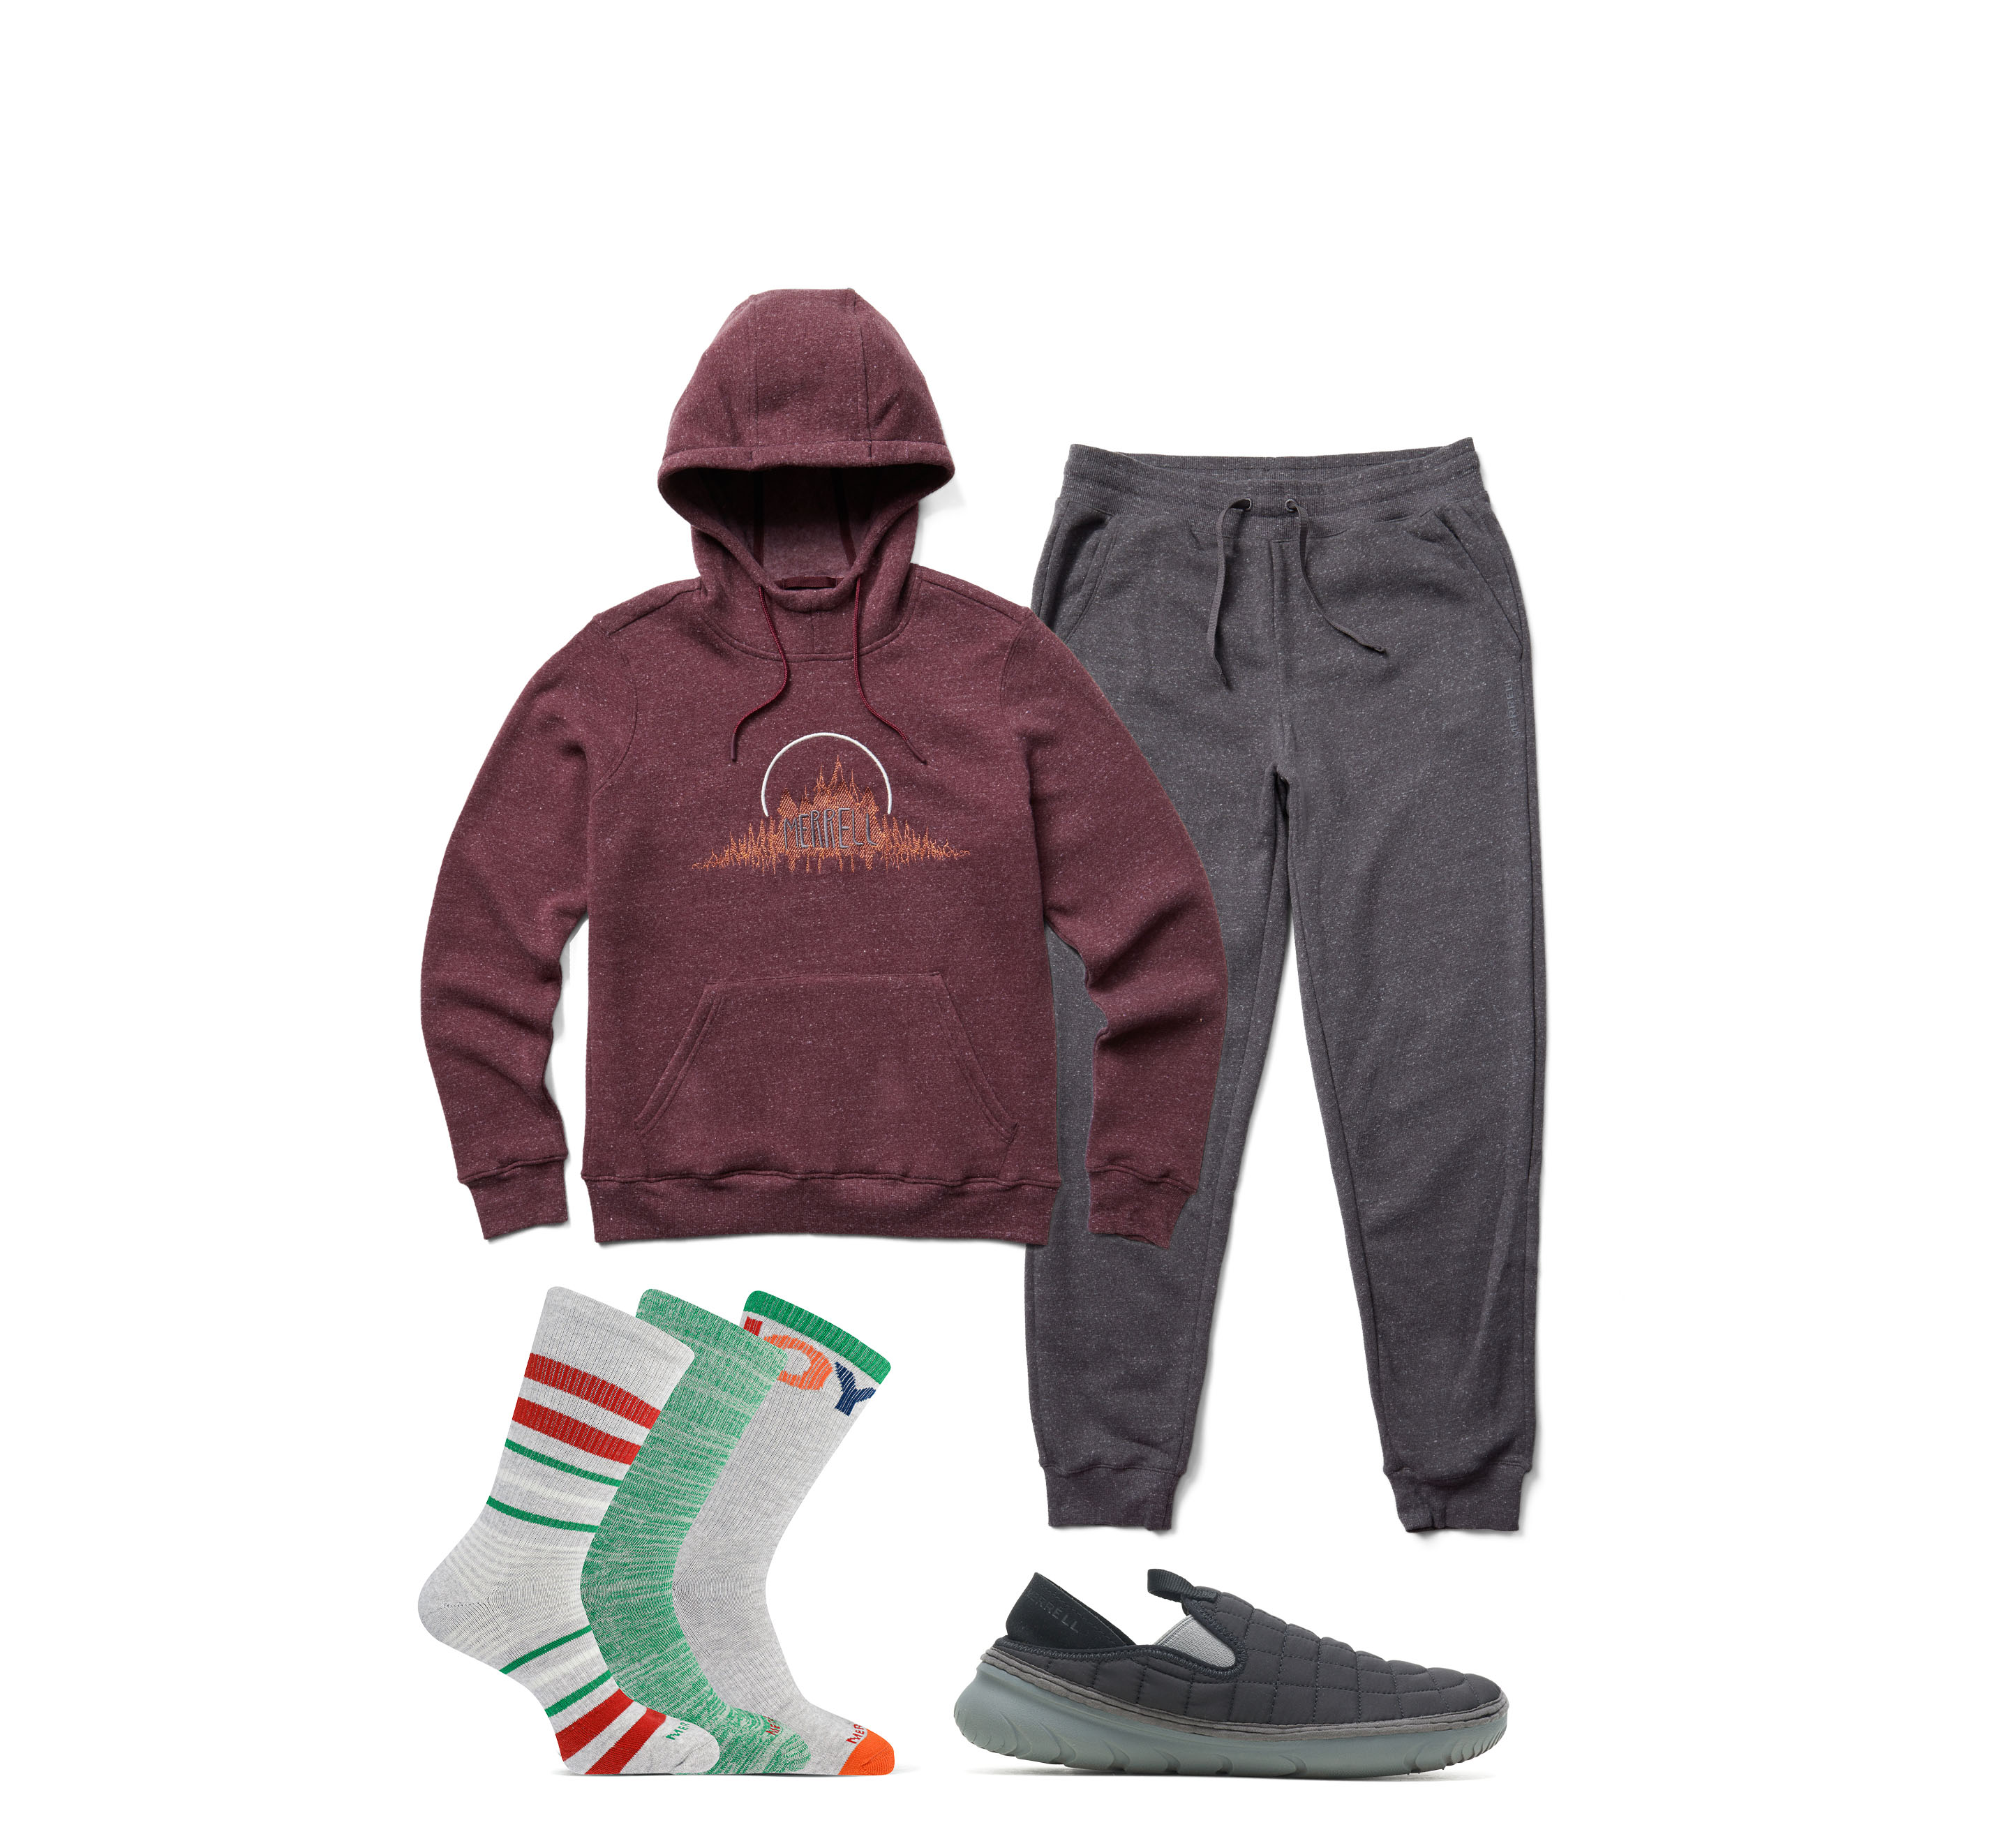 Merrell sneaker moc, pullover, and socks.